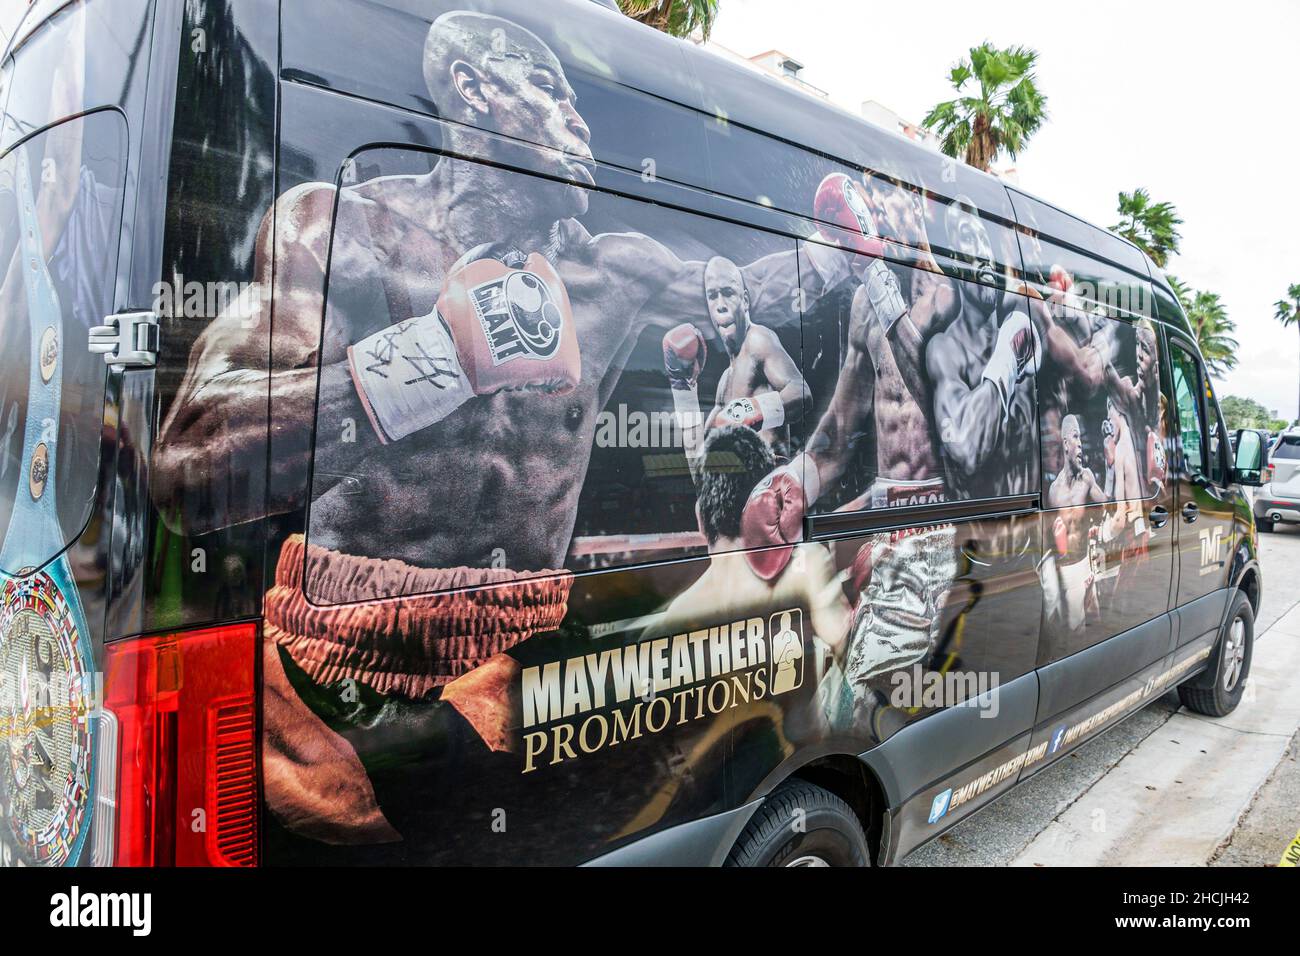 Miami Beach Florida Mayweather Promociones van publicidad promoción de eventos deportivos boxeo Foto de stock